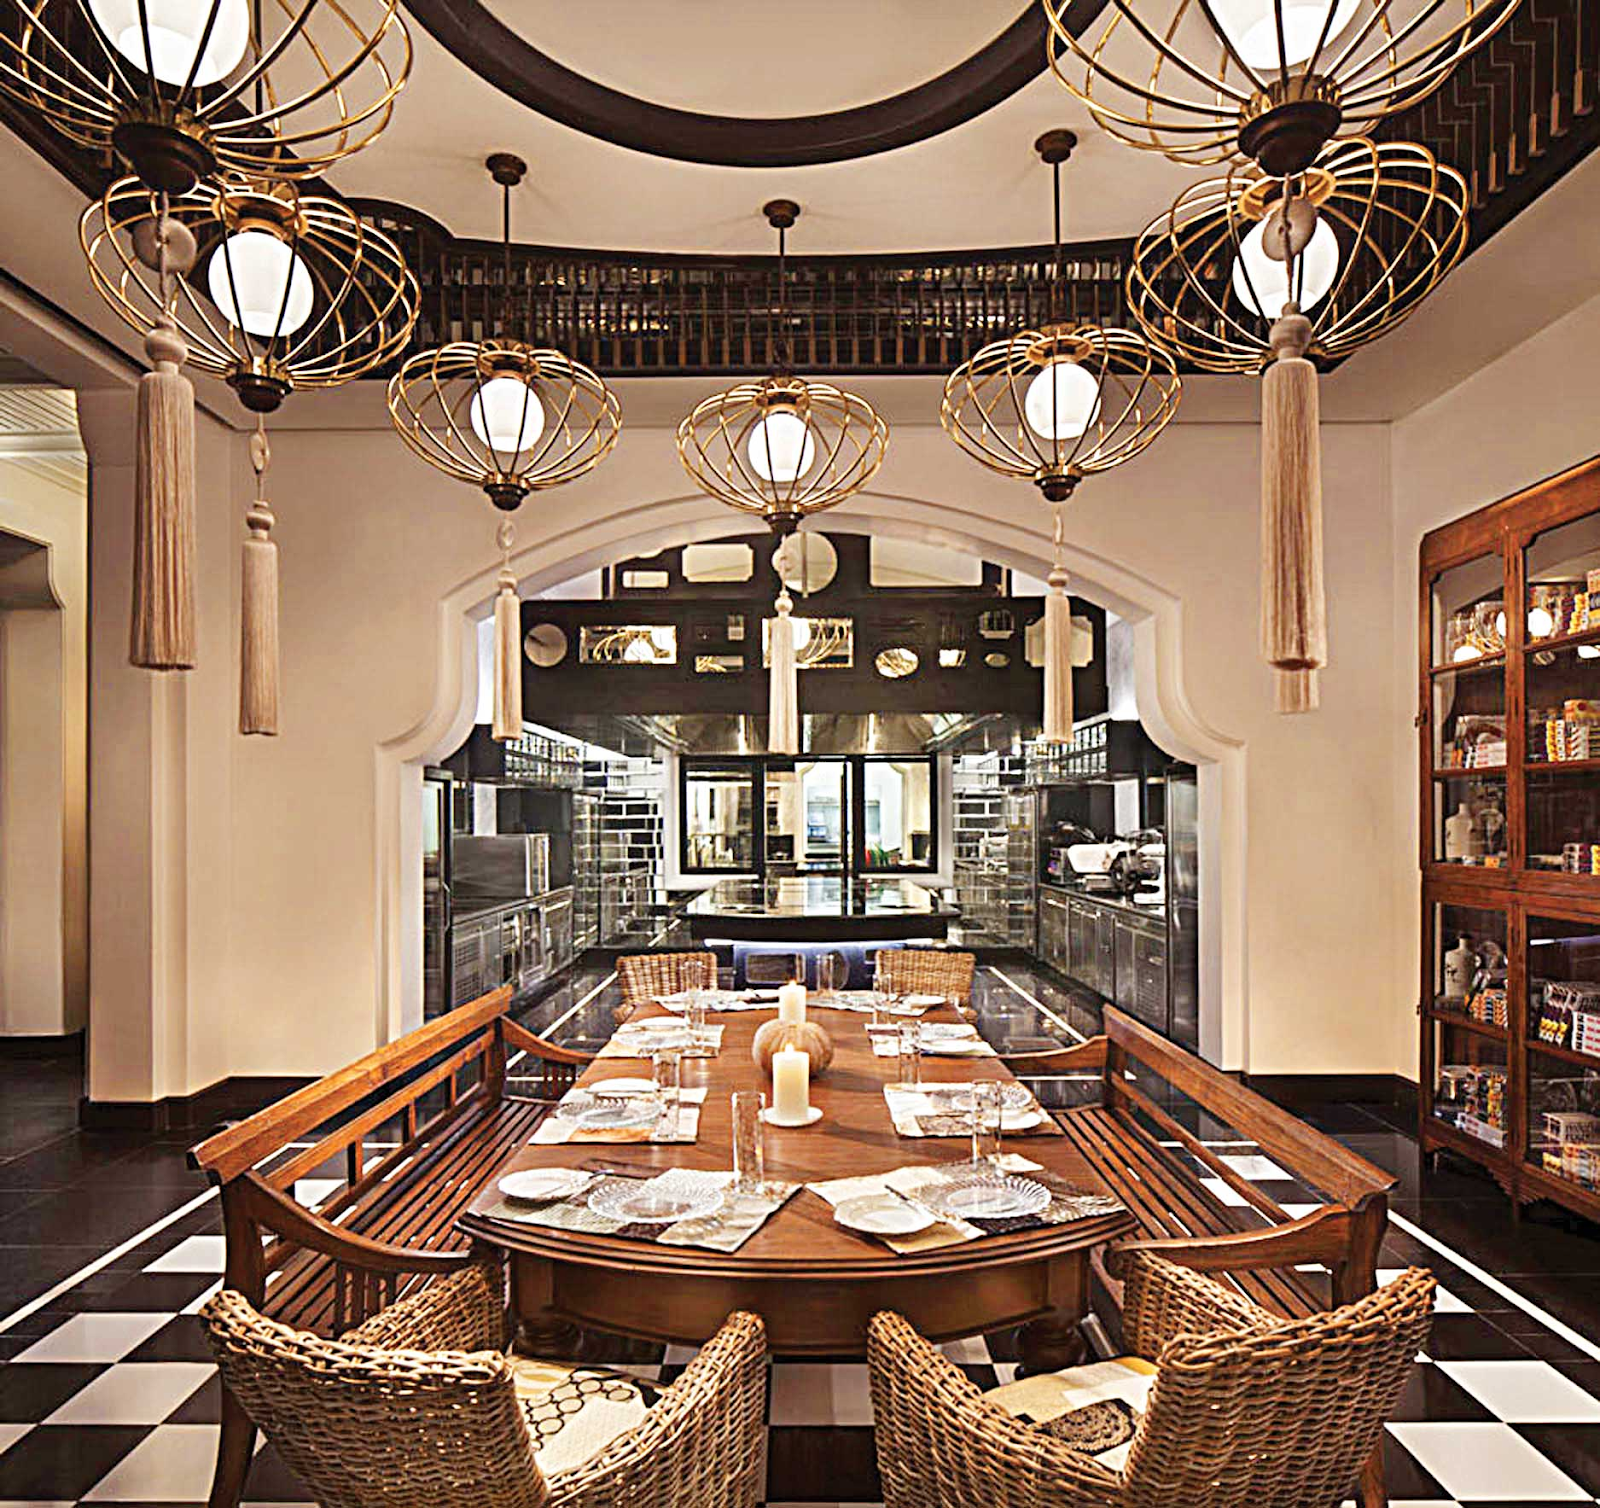 Nếu bạn đang tìm một nhà hàng lãng mạn và sang trọng hãy đến quán La Maison 1888 Đà Nẵng